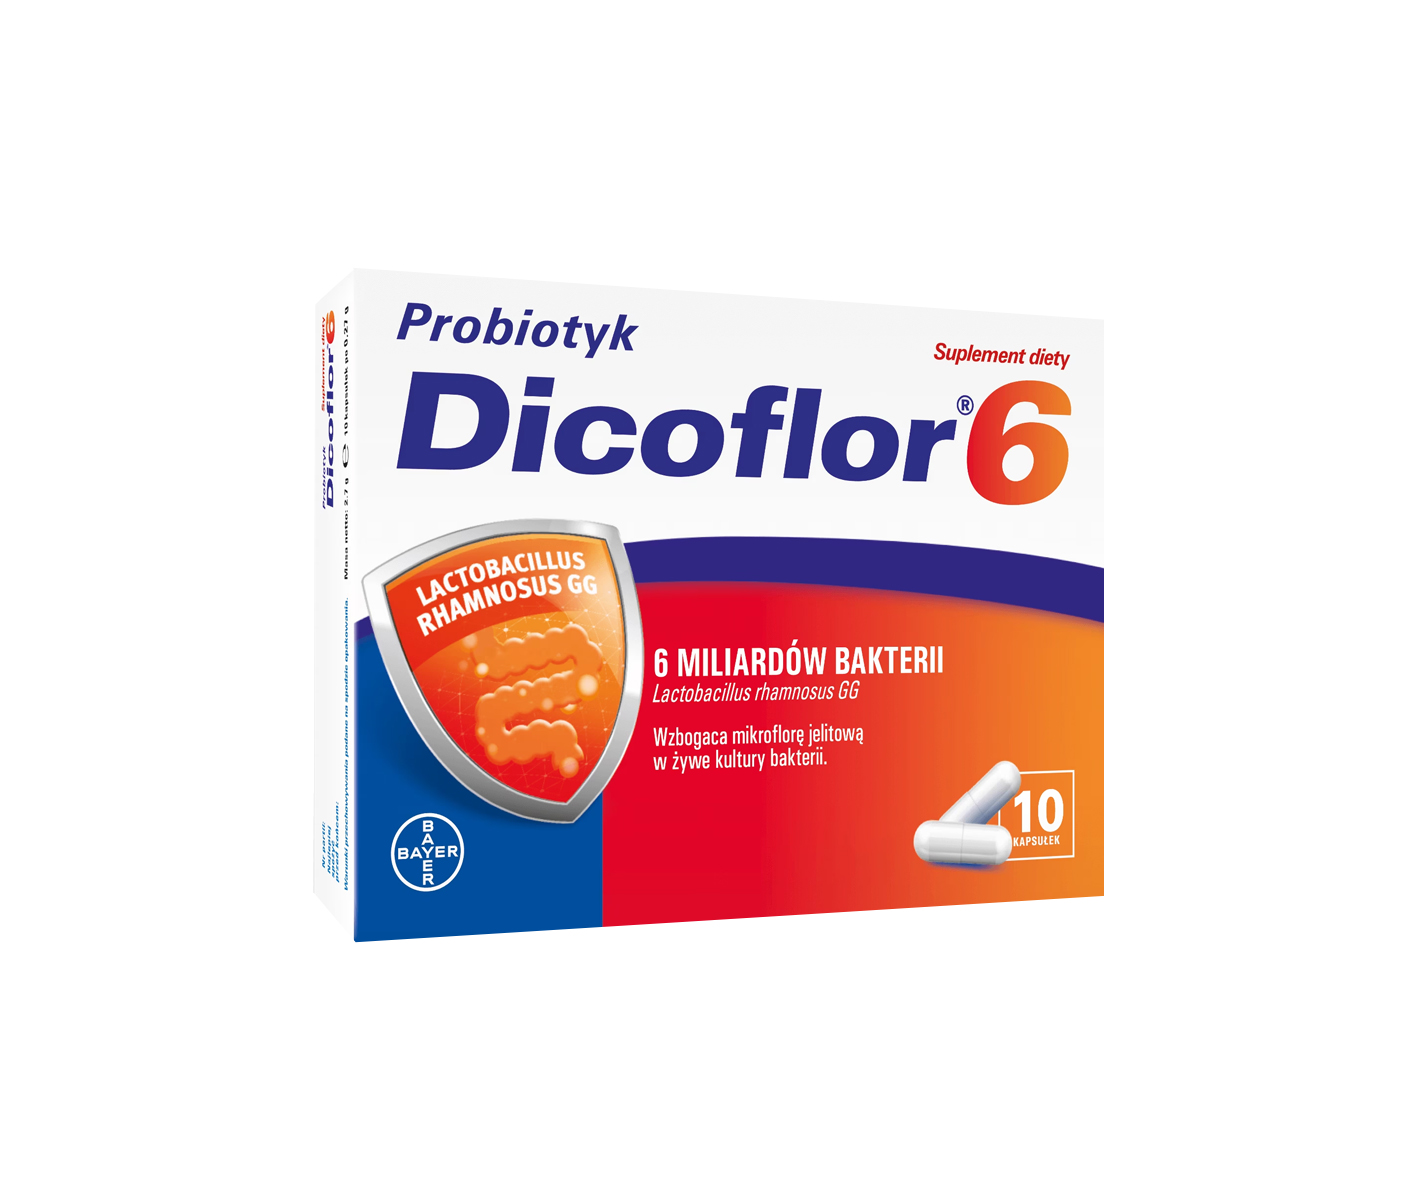 Dicoflor 6, probiótico